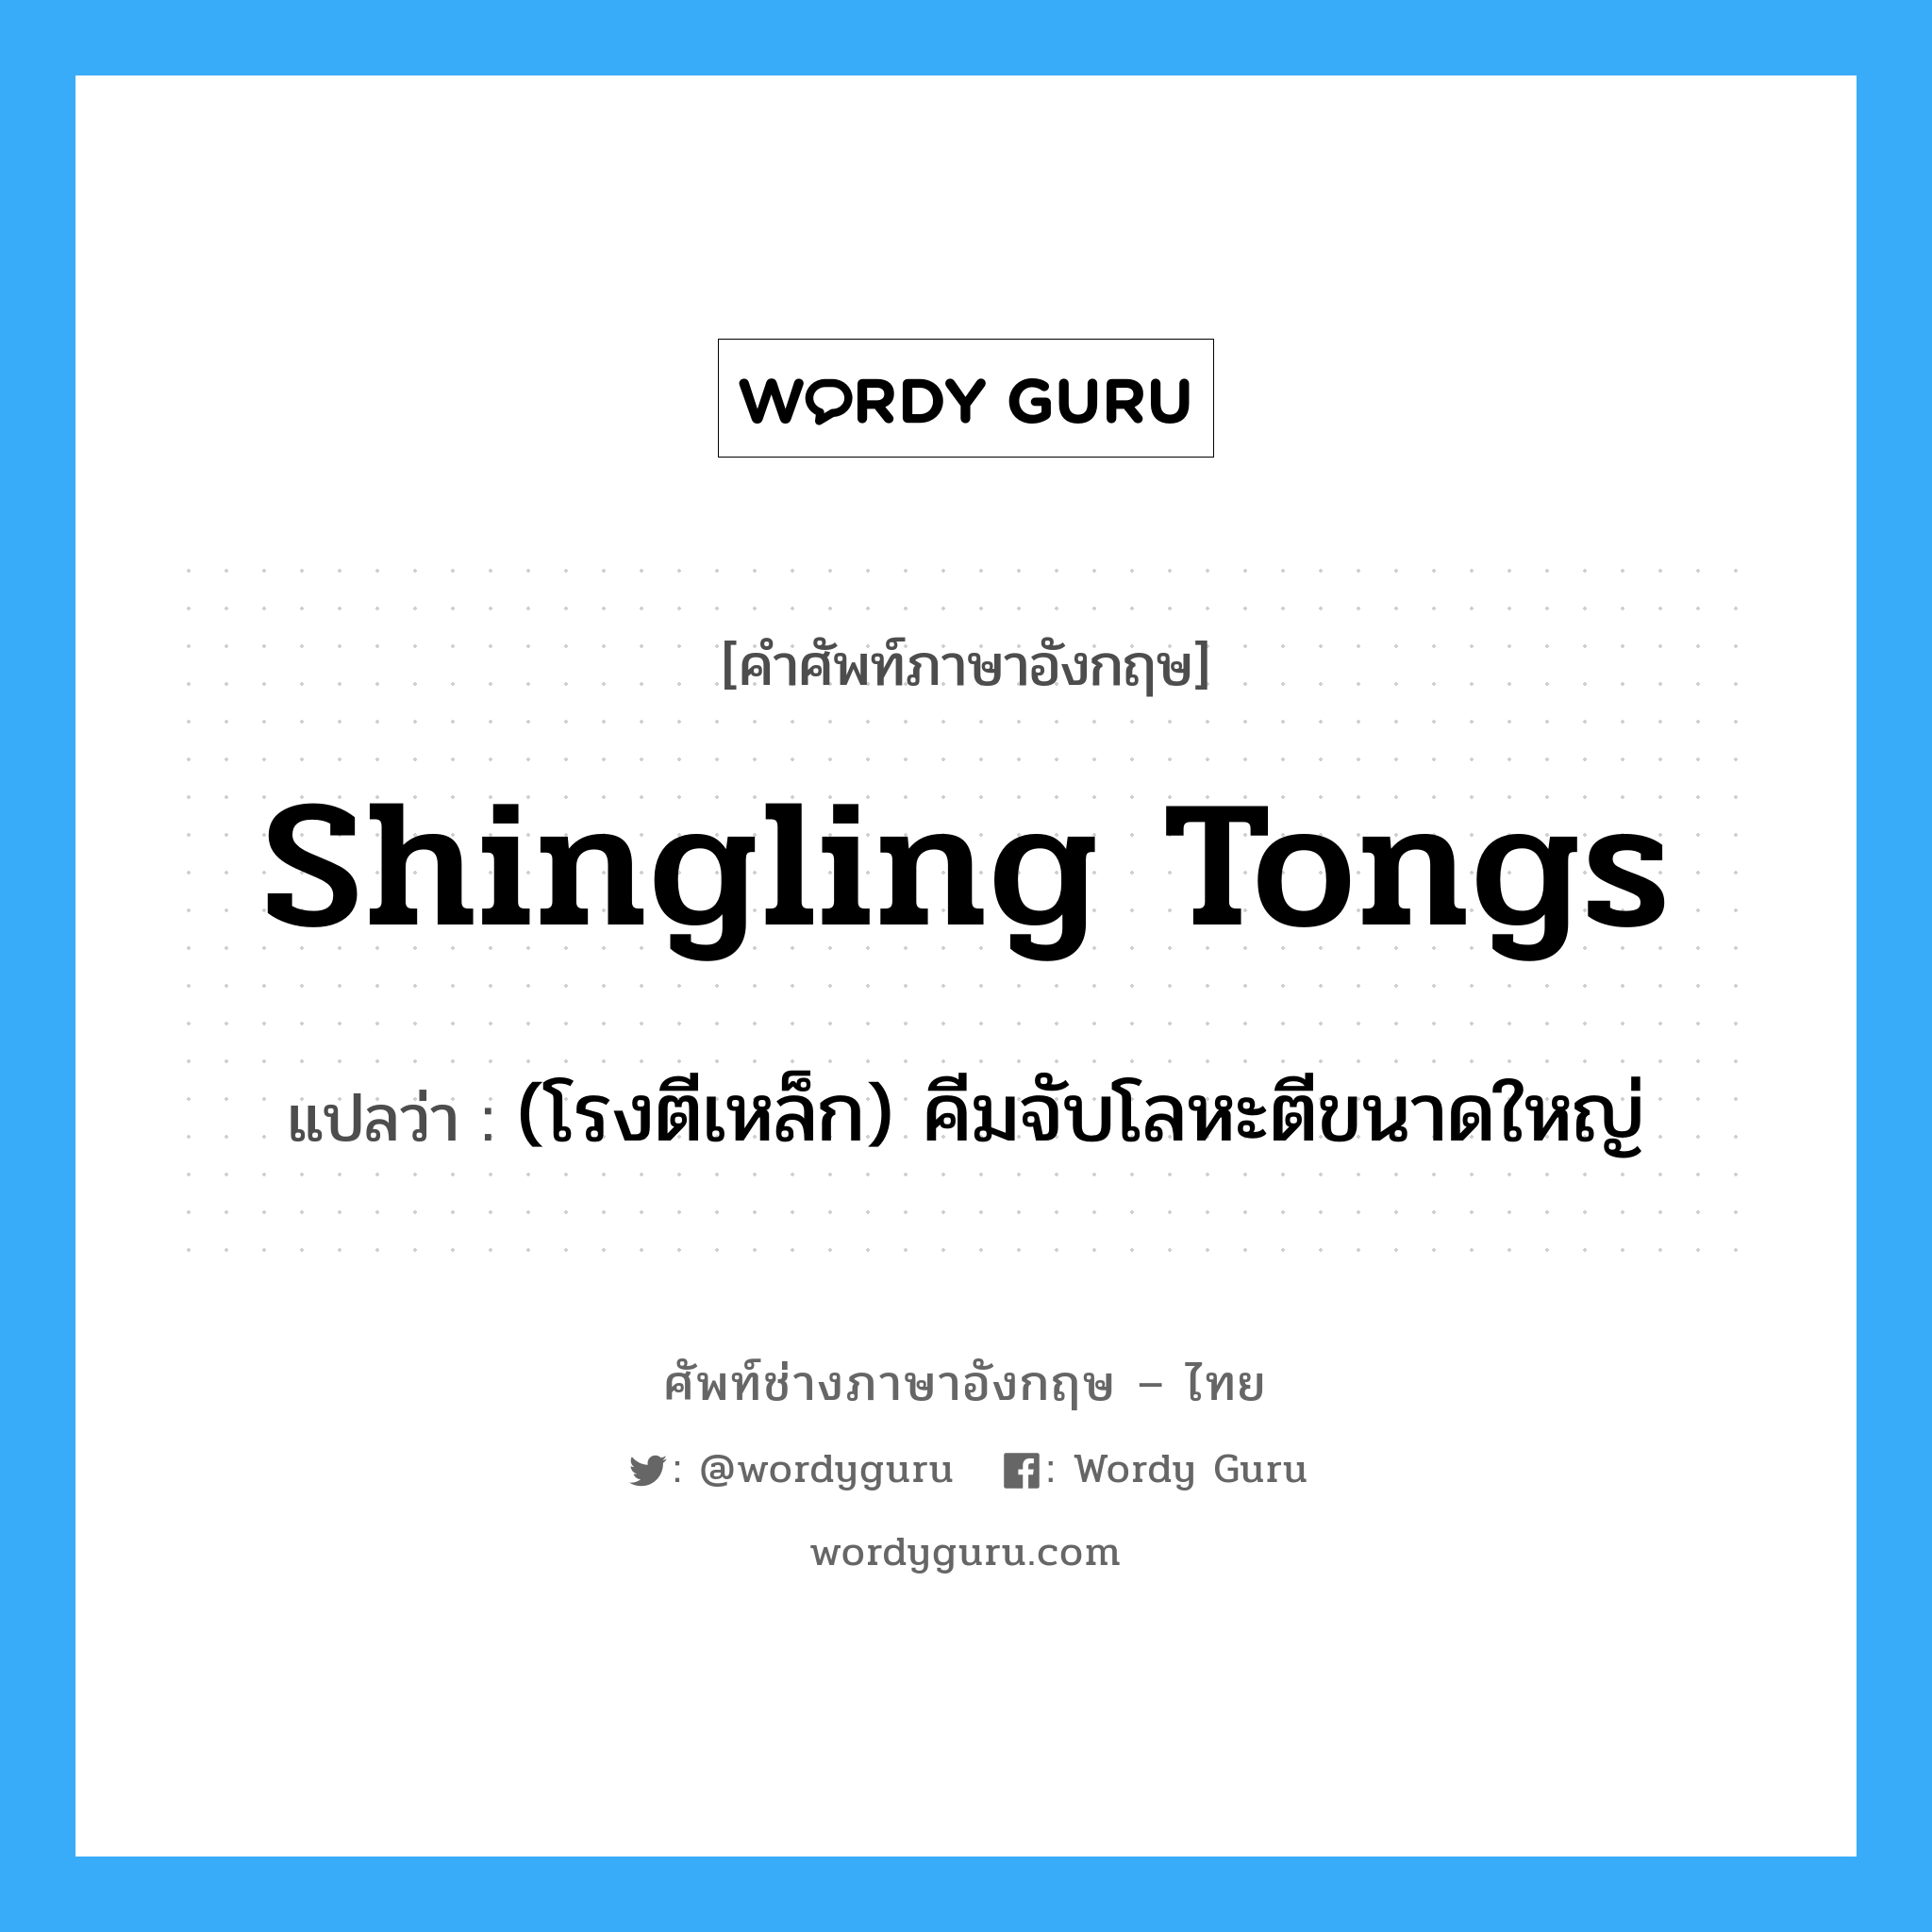 shingling tongs แปลว่า?, คำศัพท์ช่างภาษาอังกฤษ - ไทย shingling tongs คำศัพท์ภาษาอังกฤษ shingling tongs แปลว่า (โรงตีเหล็ก) คีมจับโลหะตีขนาดใหญ่